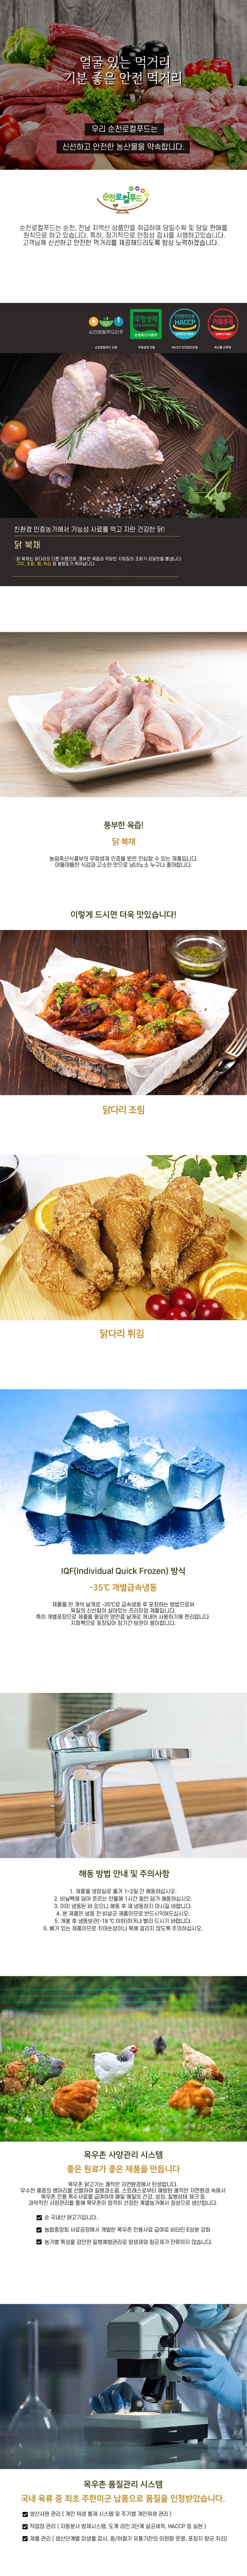 [목우촌] 닭 북채 (닭다리) 300g